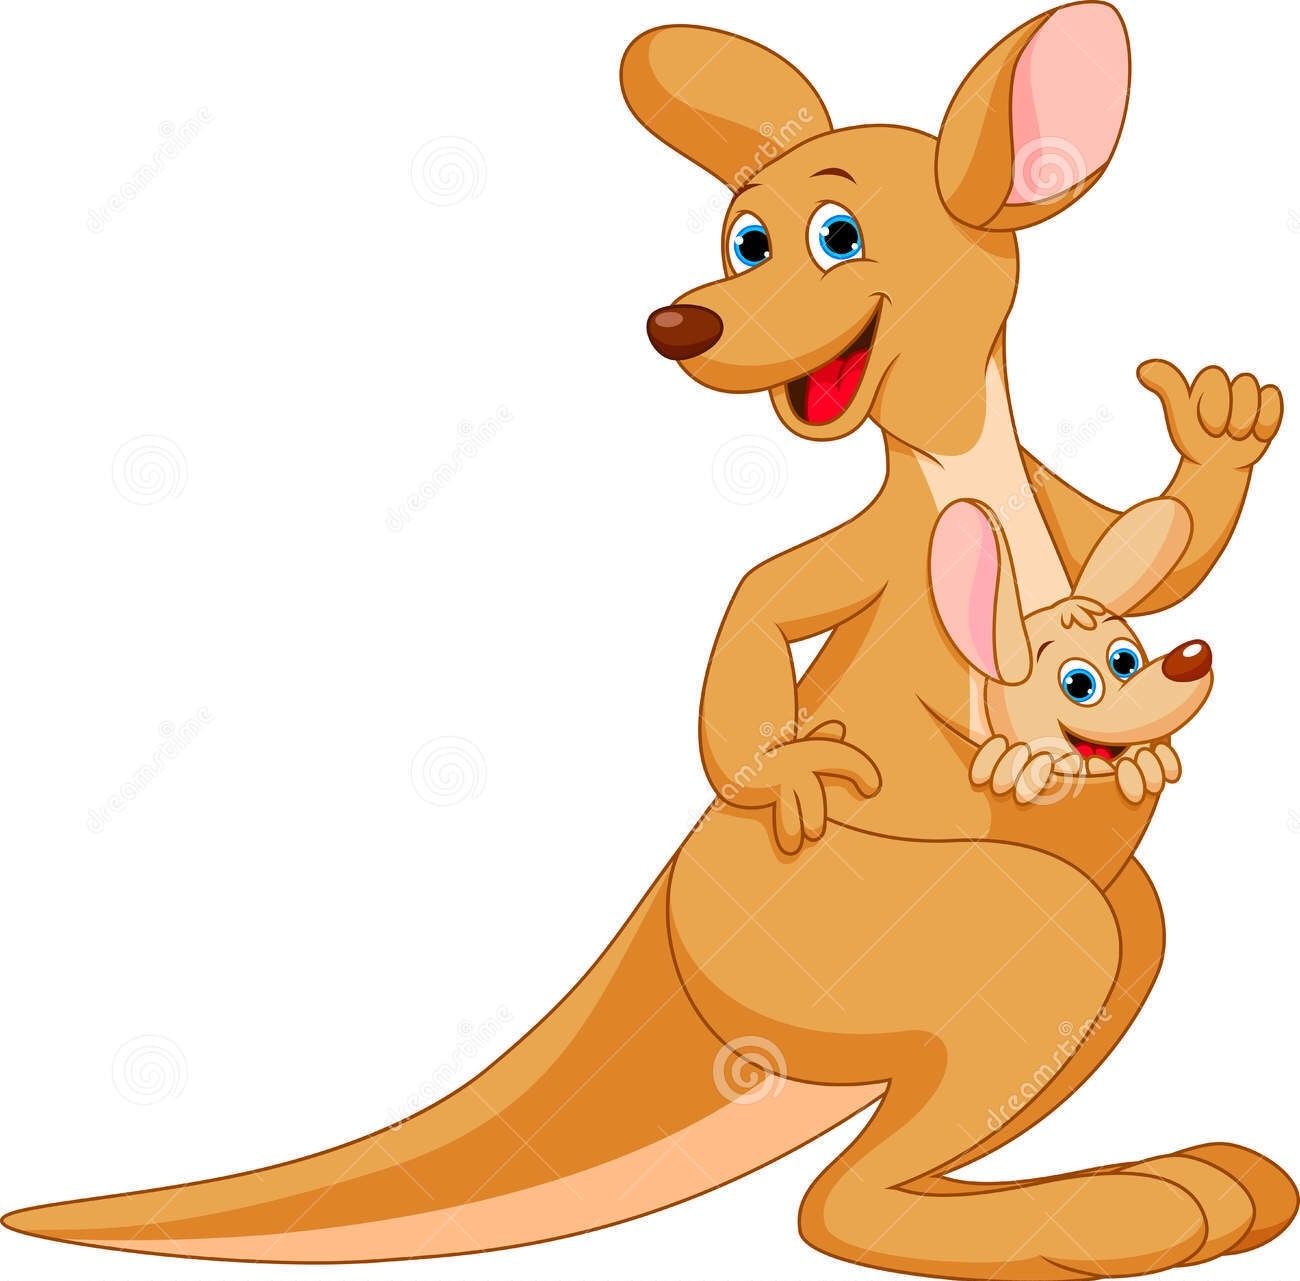 kangaroo clipart family